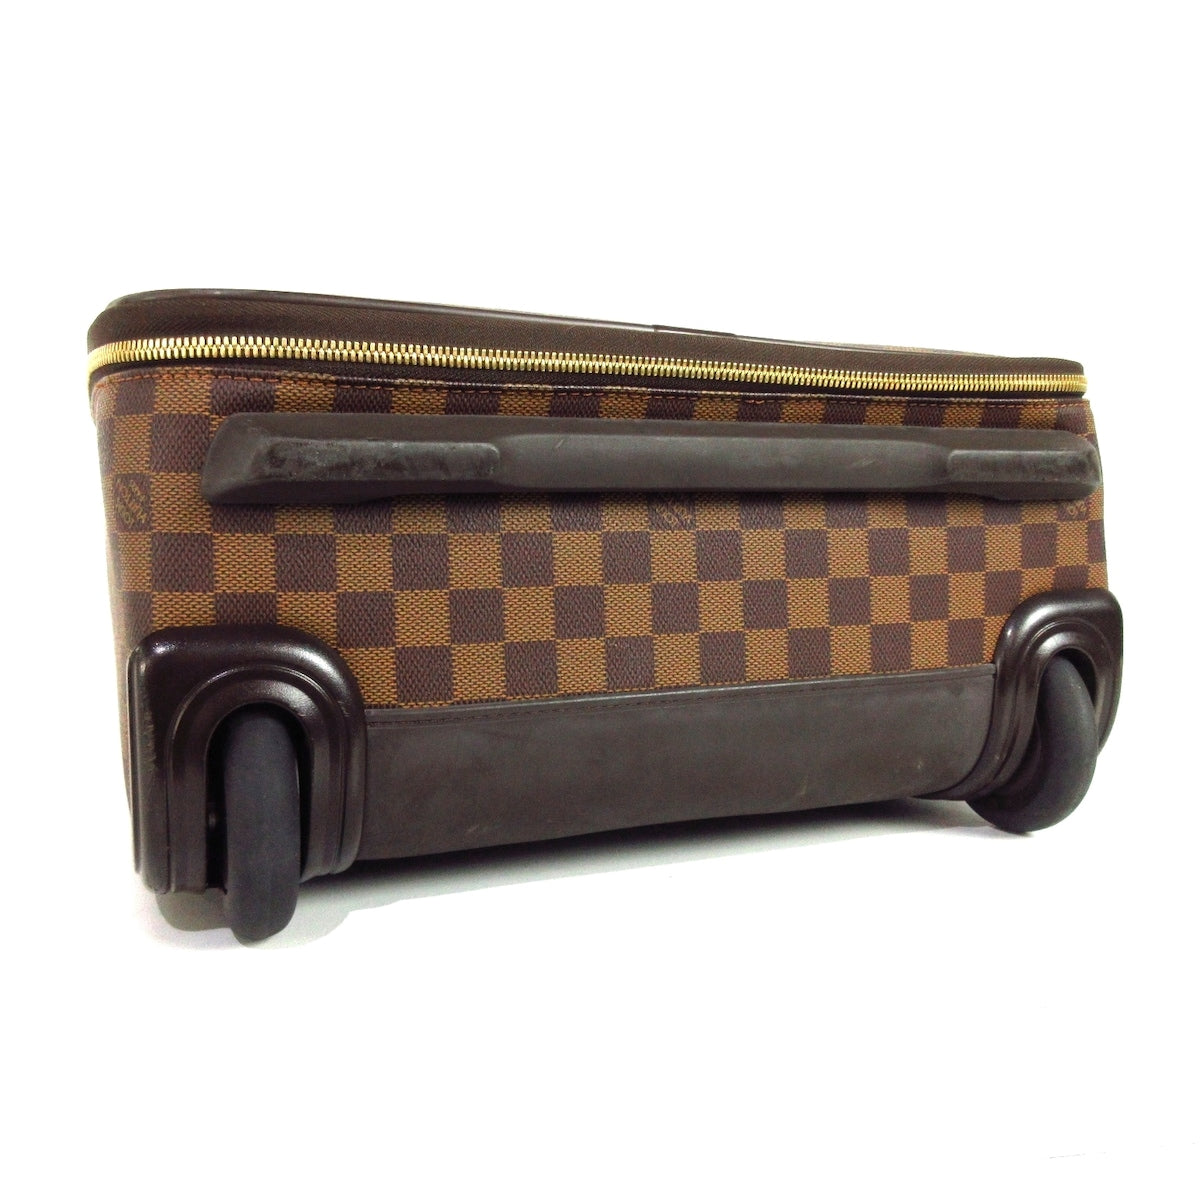 Preloved Louis Vuitton Monogram Pegase 45 Suitcase KMBVRXJ 032524 G